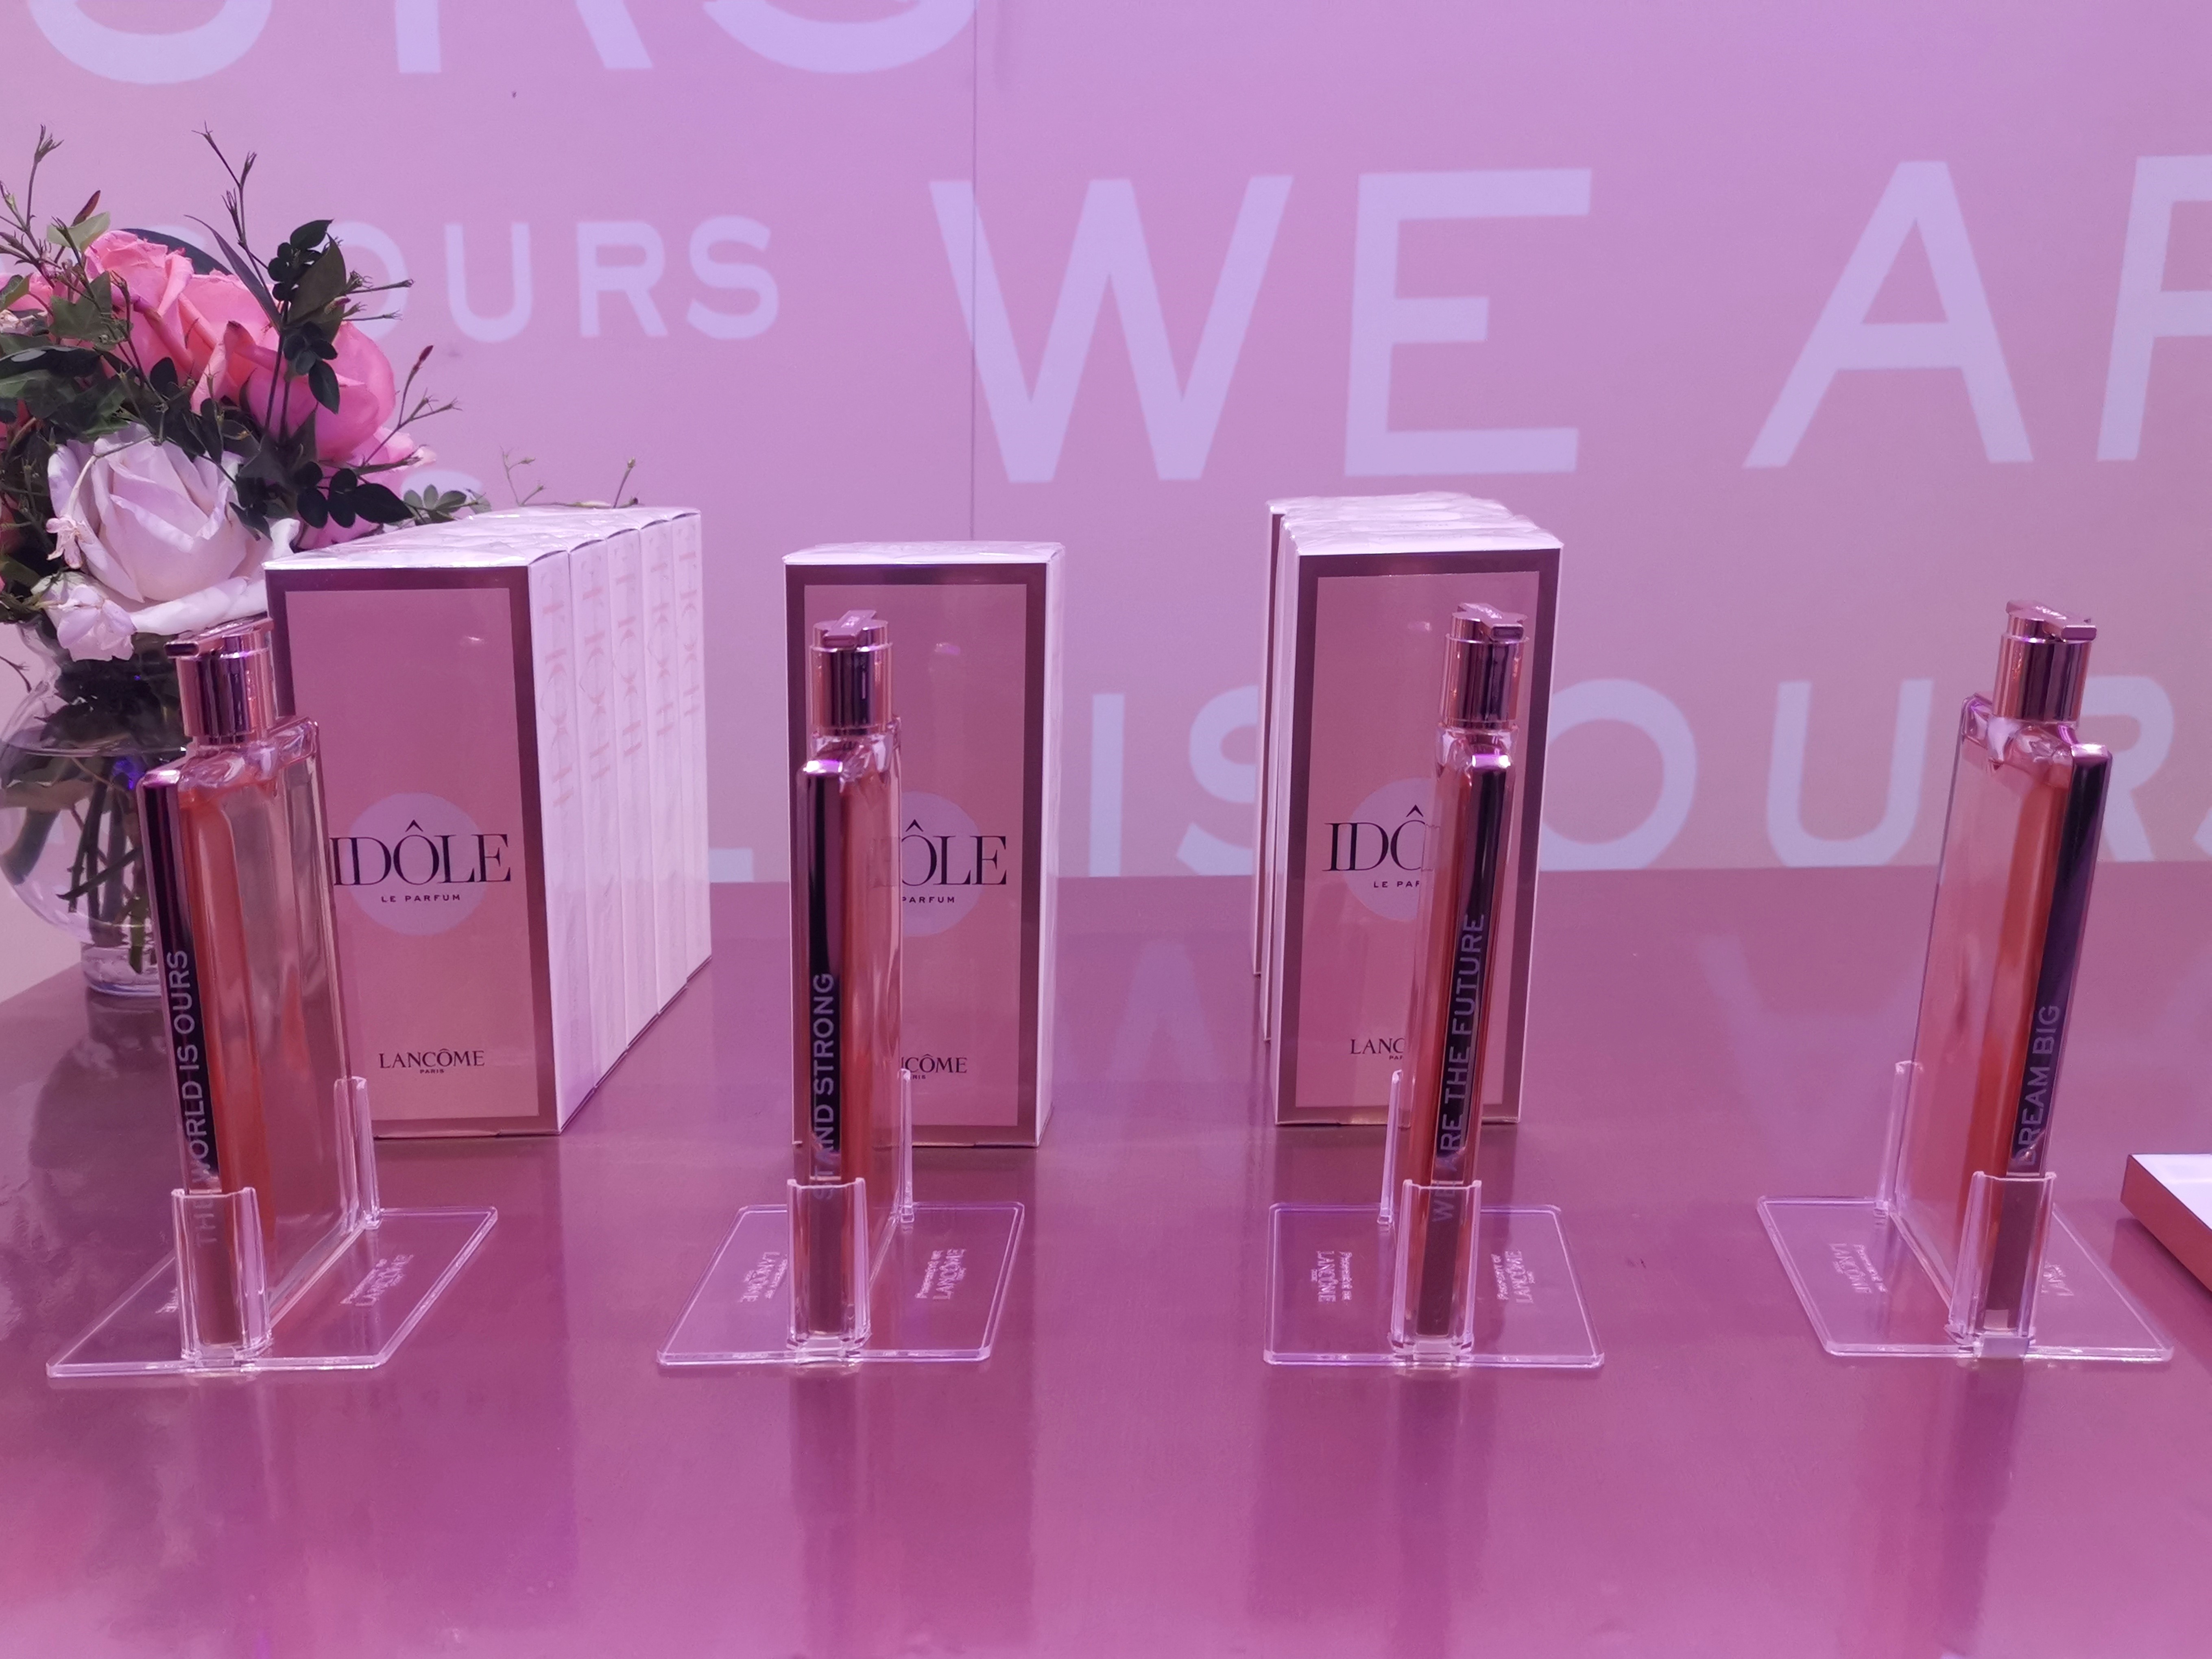 Perfumerías Fetiche trajo al país la nueva loción de Lancôme, la cual ya está disponible en todas las sucursales. Foto Cortesía